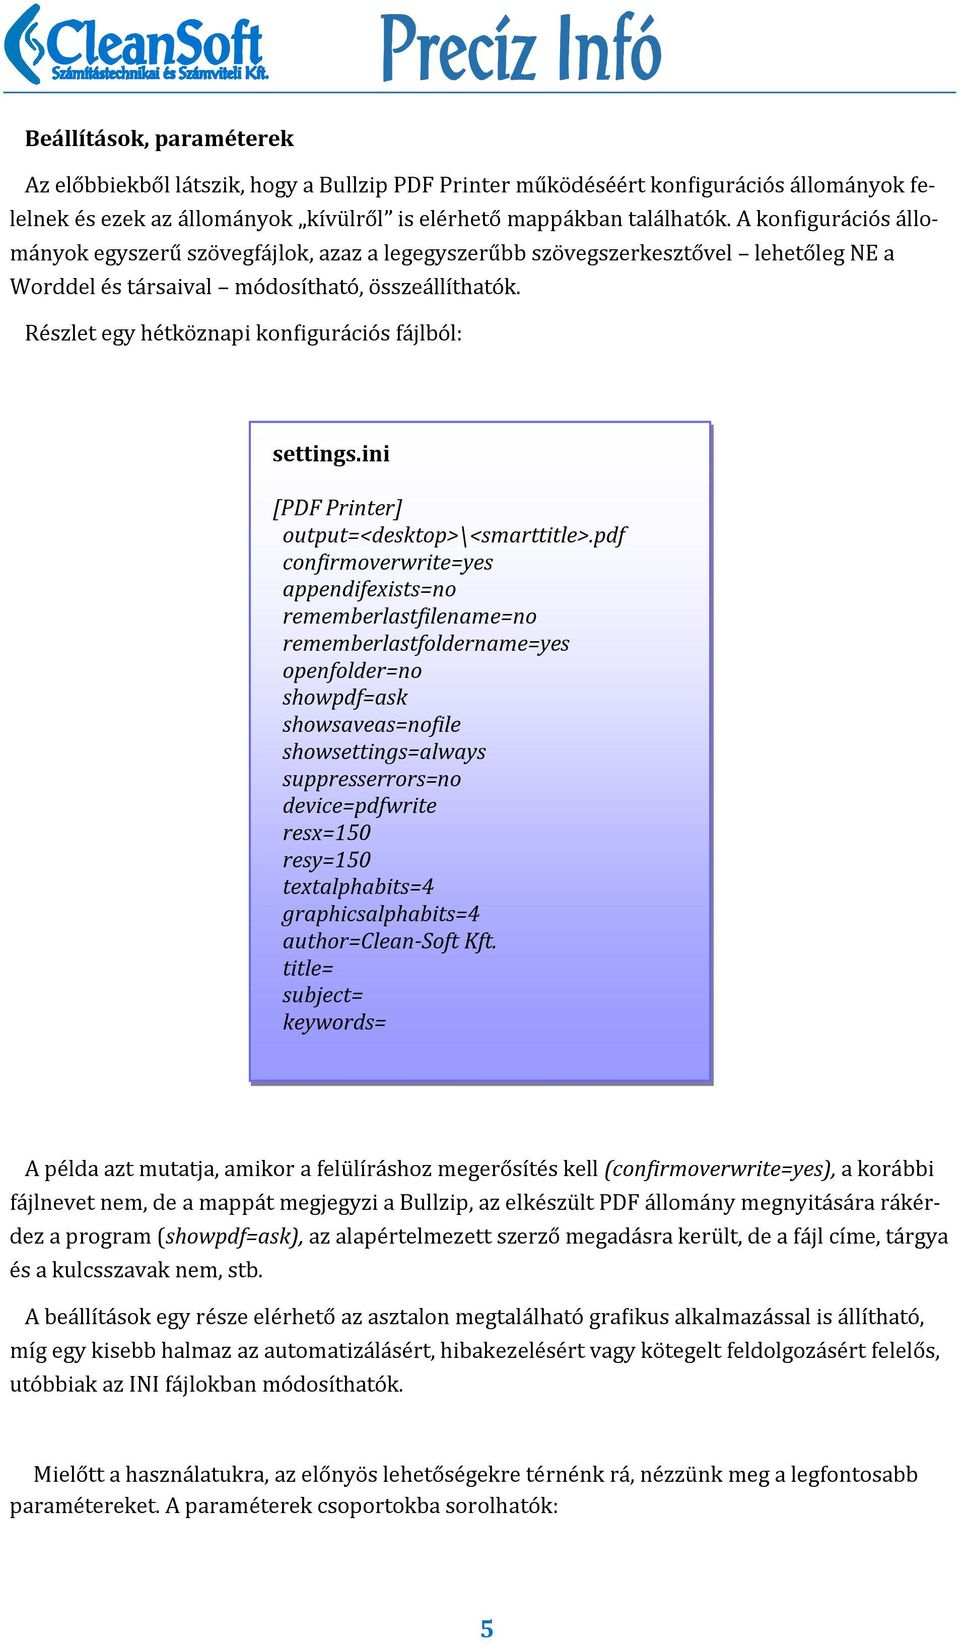 Re szlet egy he tko znapi konbigura cio s fa jlbo l: settings.ini [PDF Printer] output=<desktop>\<smarttitle>.